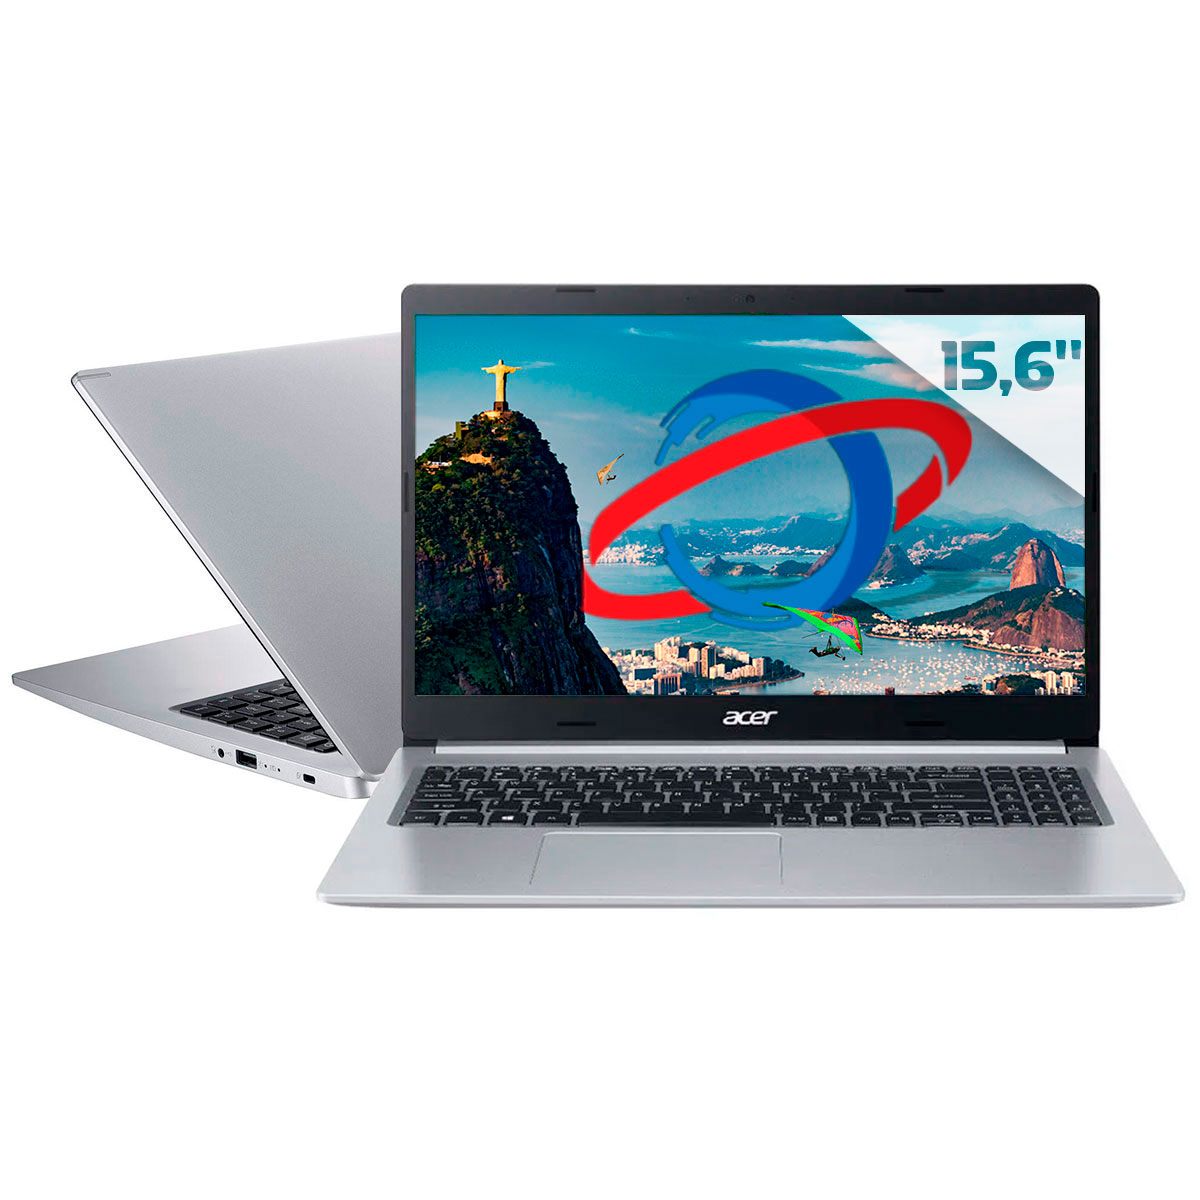 Notebook Acer Aspire A515-54-57EN - Intel i5 1035G1, RAM 8GB, SSD 256GB, Tela 15.6